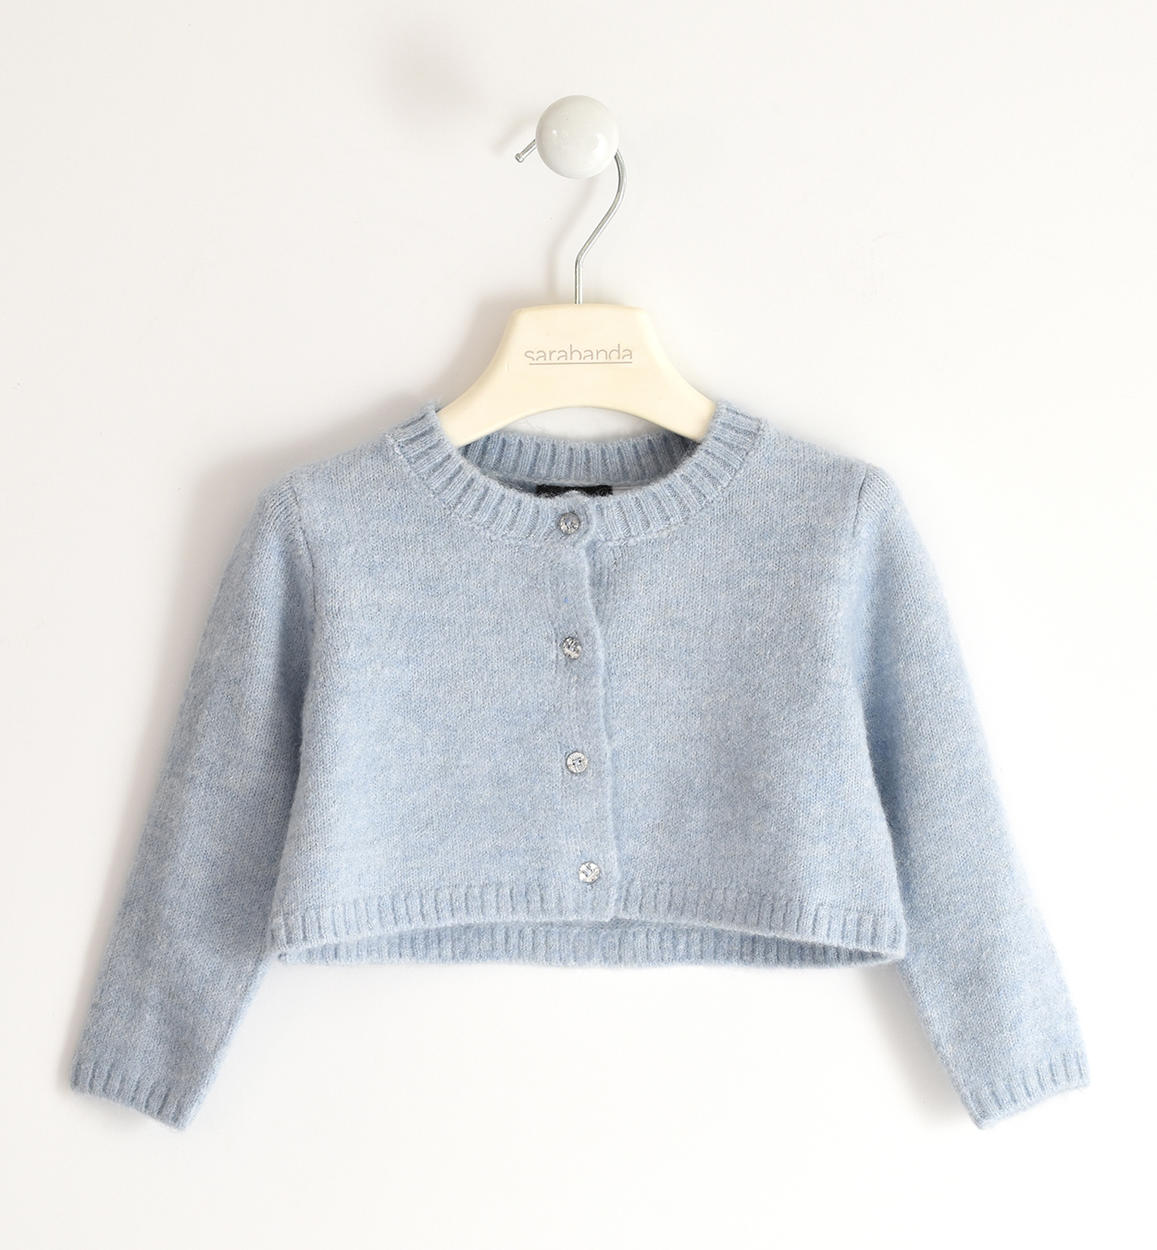 Abbigliamento per bambini , Cardigan bambina in tricot stretch da 12 mesi a 8 anni Sarabanda 05240 - BabyBimbo 0-16, abbigliamento bambini